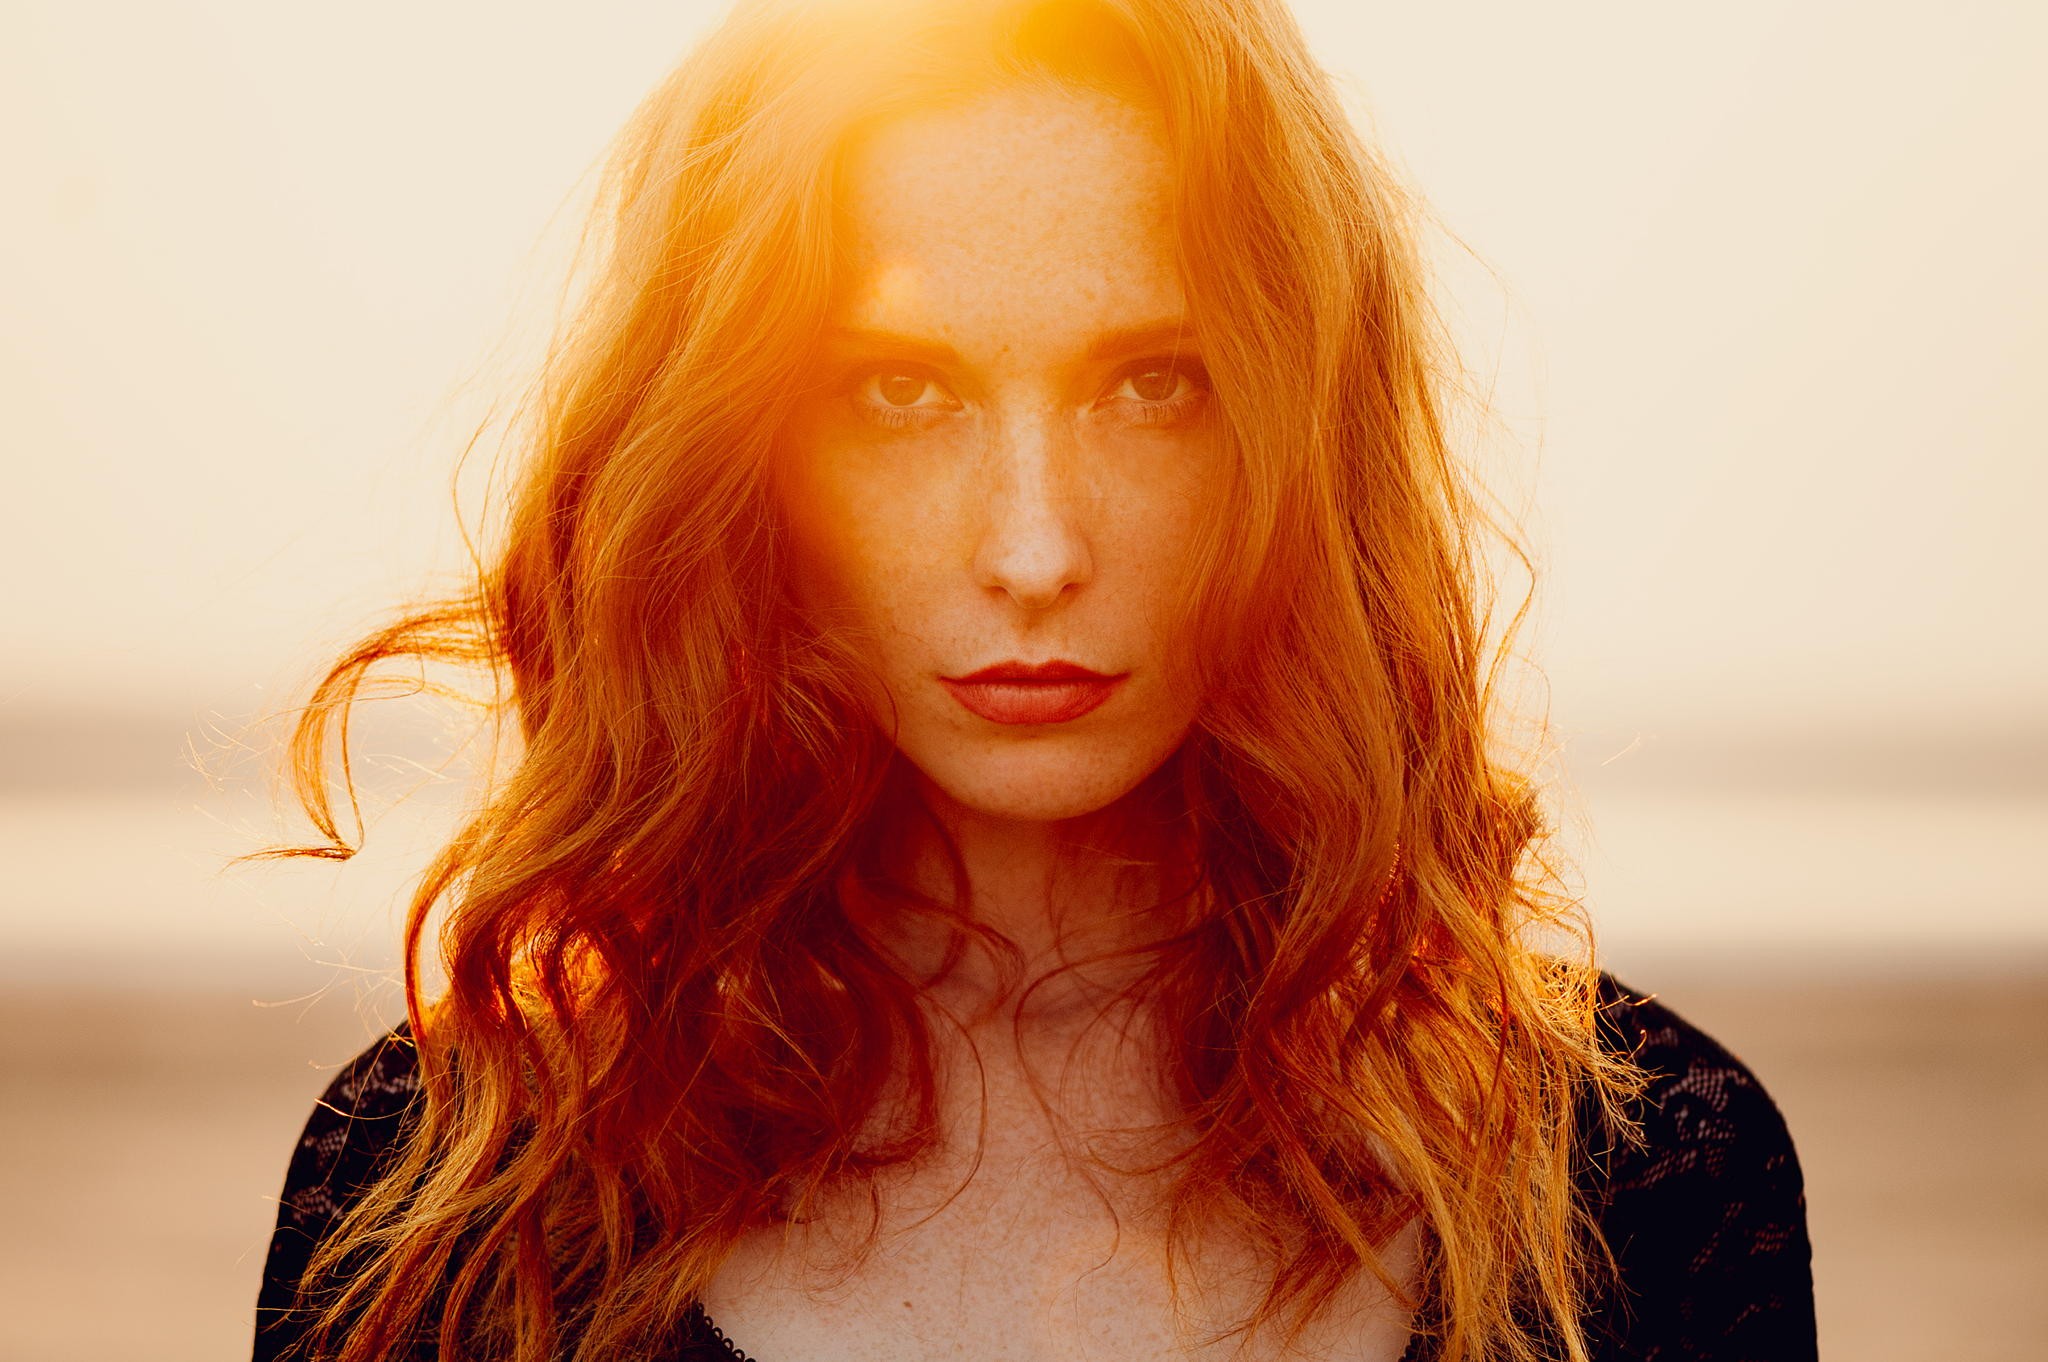 Women Redhead Face Sunlight Looking At Viewer Ann Nevreva 2048x1362